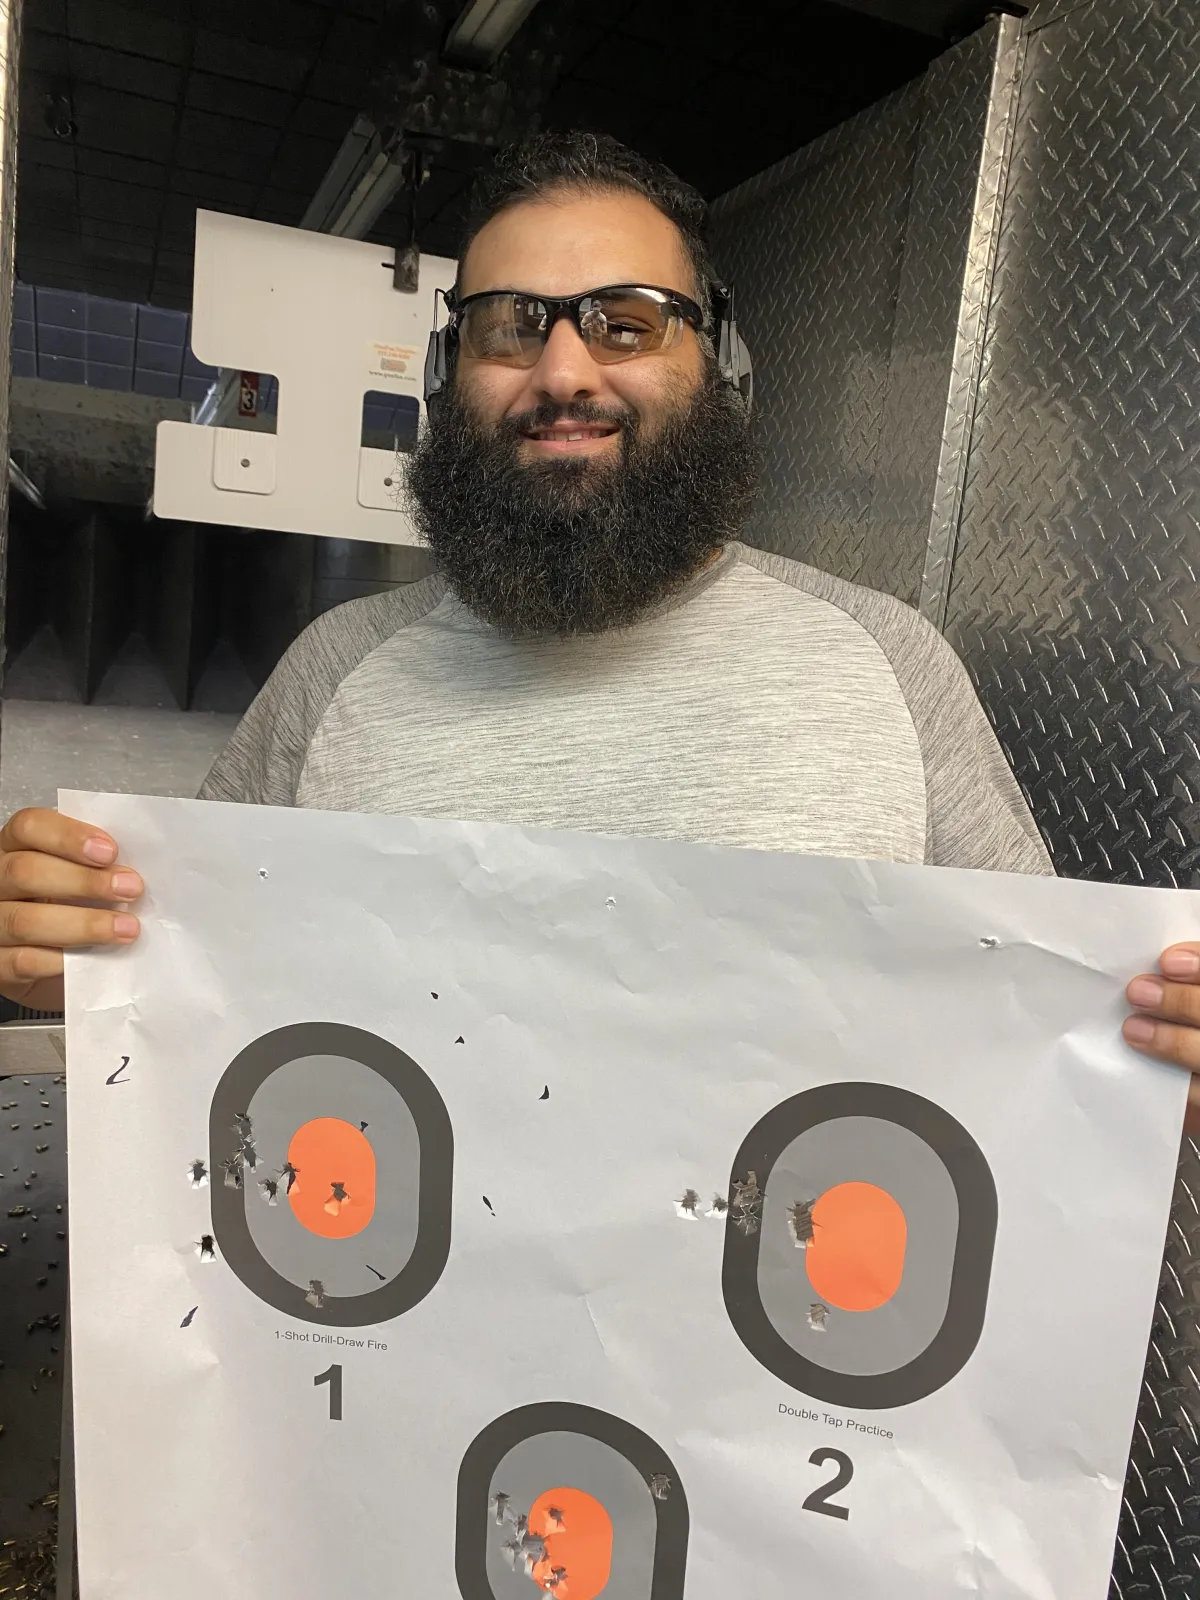 Man holding target at gun range